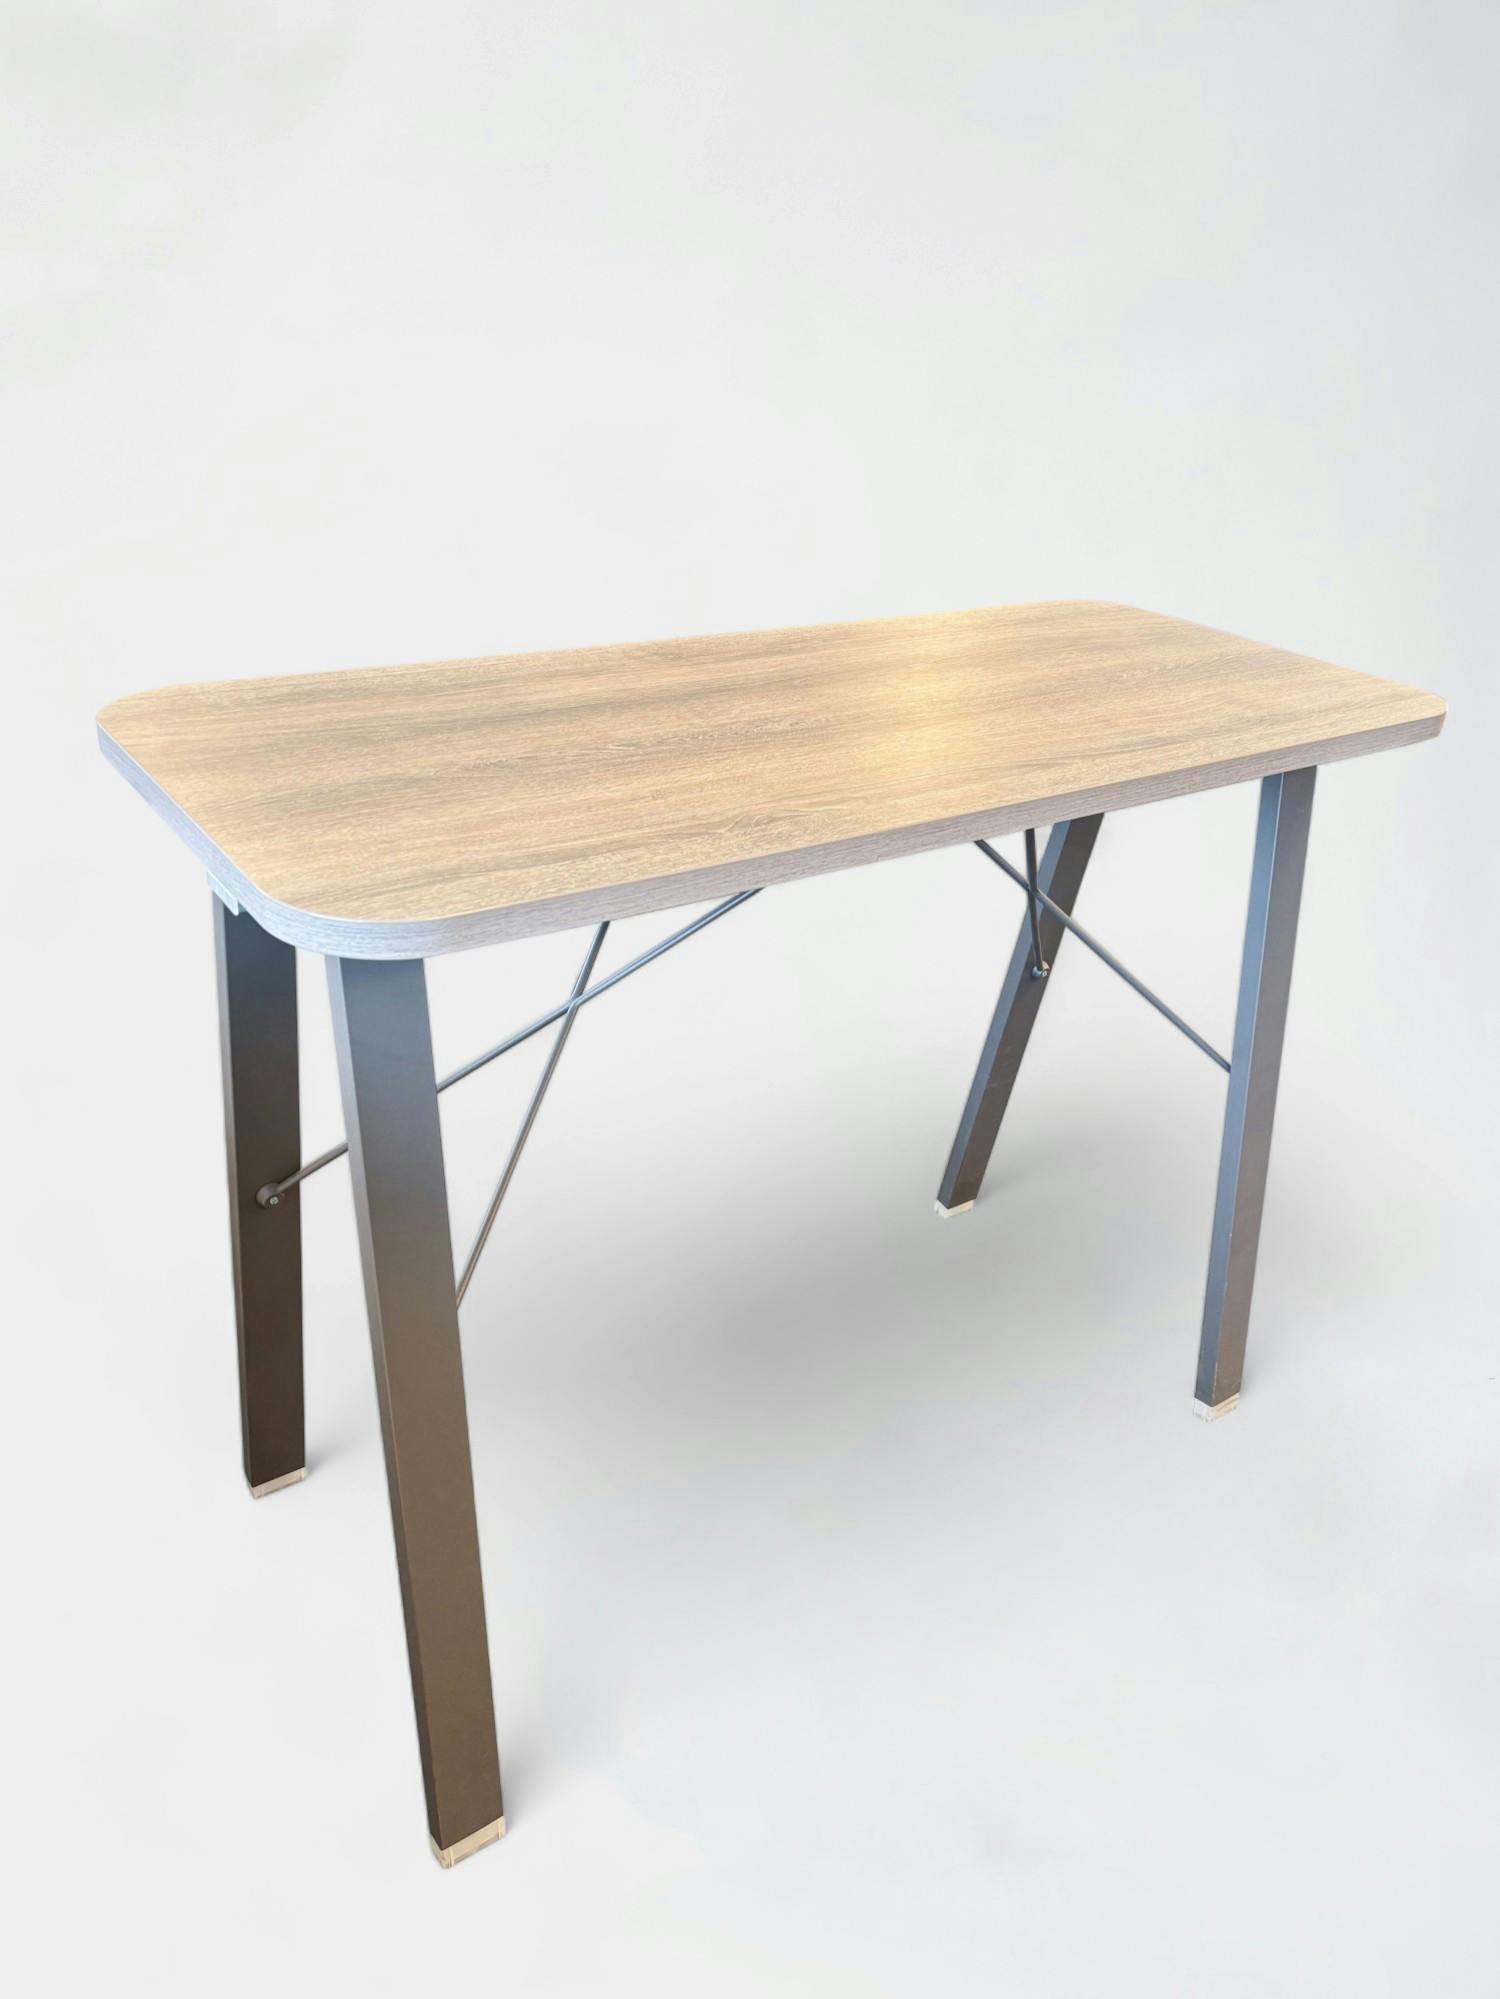 Bureau debout réglable en bois clair avec pieds métalliques élégants - Relieve Furniture